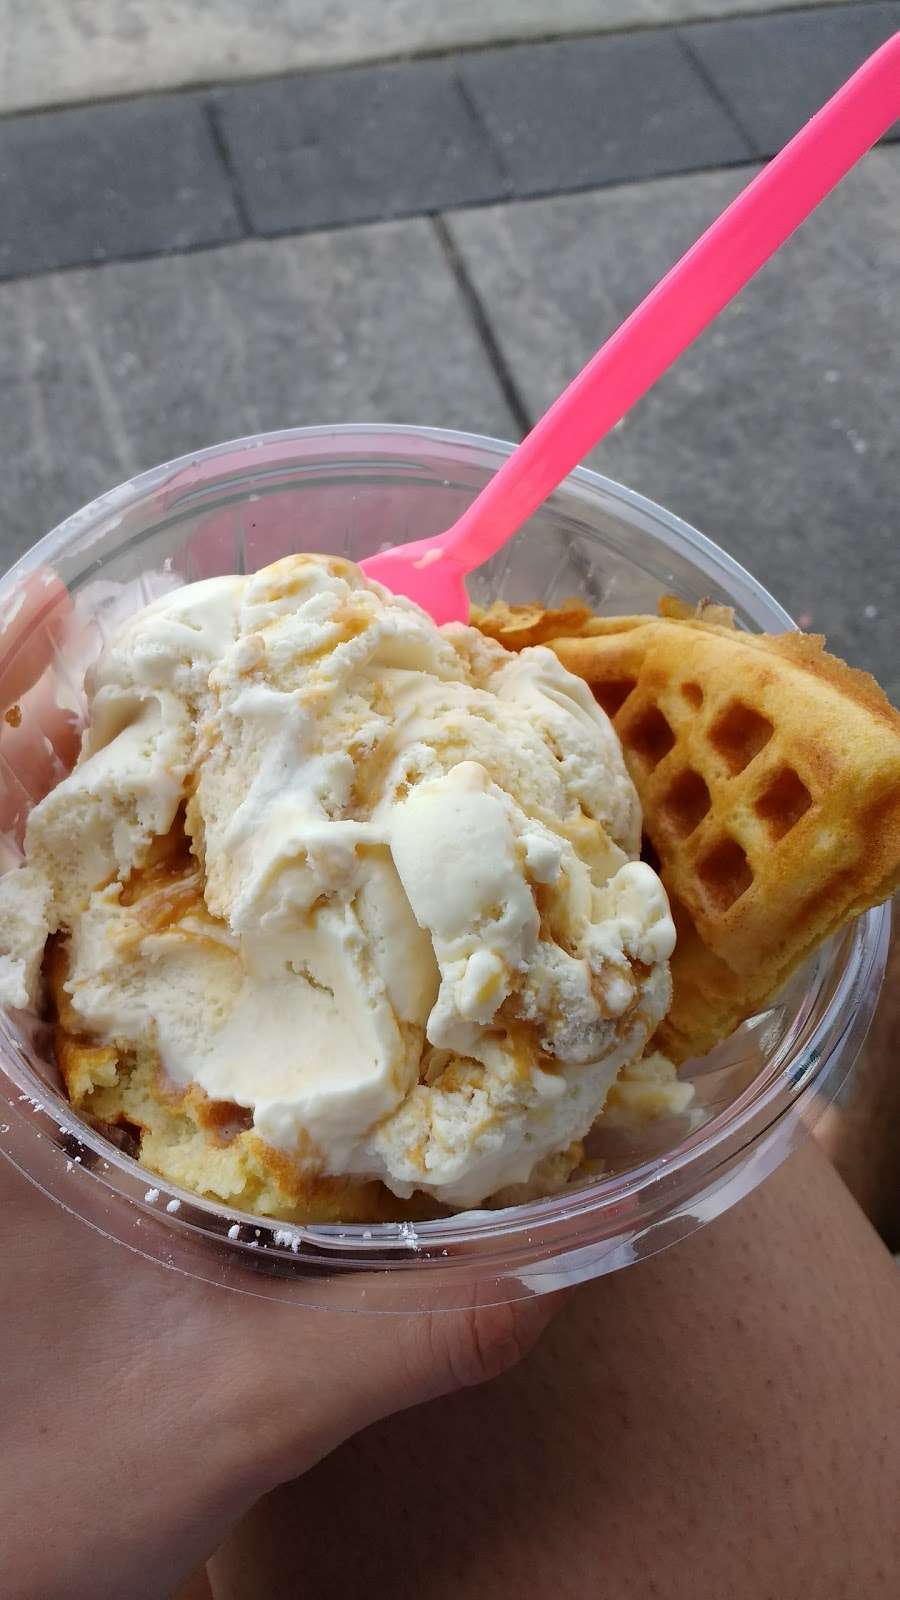 Aunt Bettys Ice Cream Shack | 4001 West Ave, Ocean City, NJ 08226, USA | Phone: (609) 398-4005